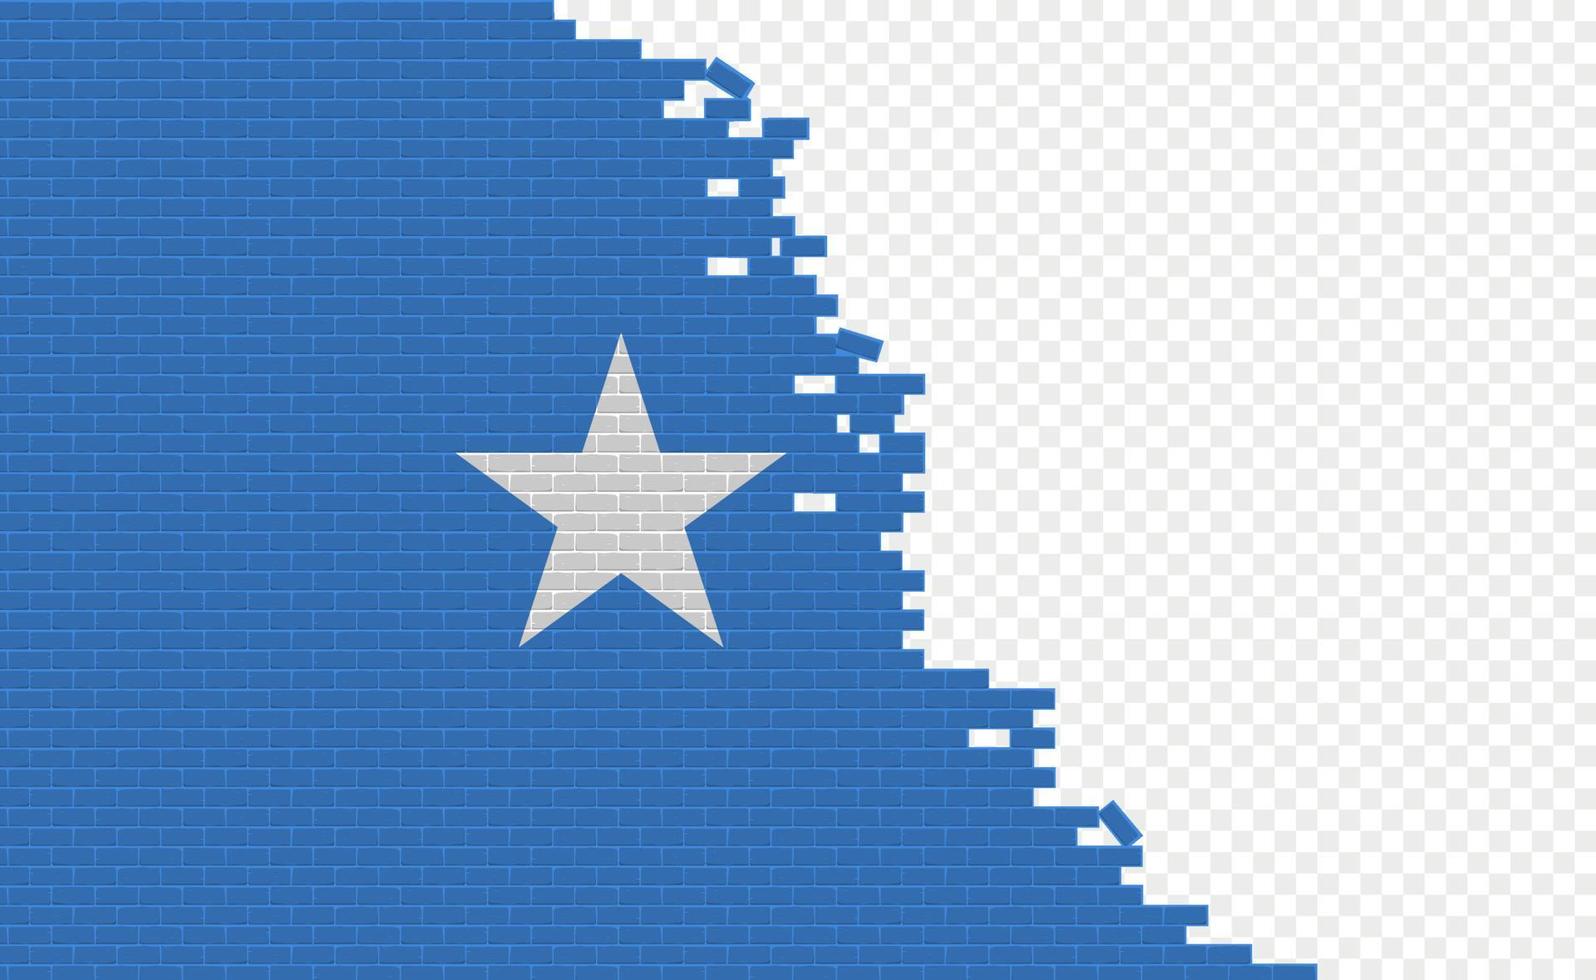 bandera de somalia en la pared de ladrillos rotos. campo de bandera vacío de otro país. comparación de países. fácil edición y vector en grupos.